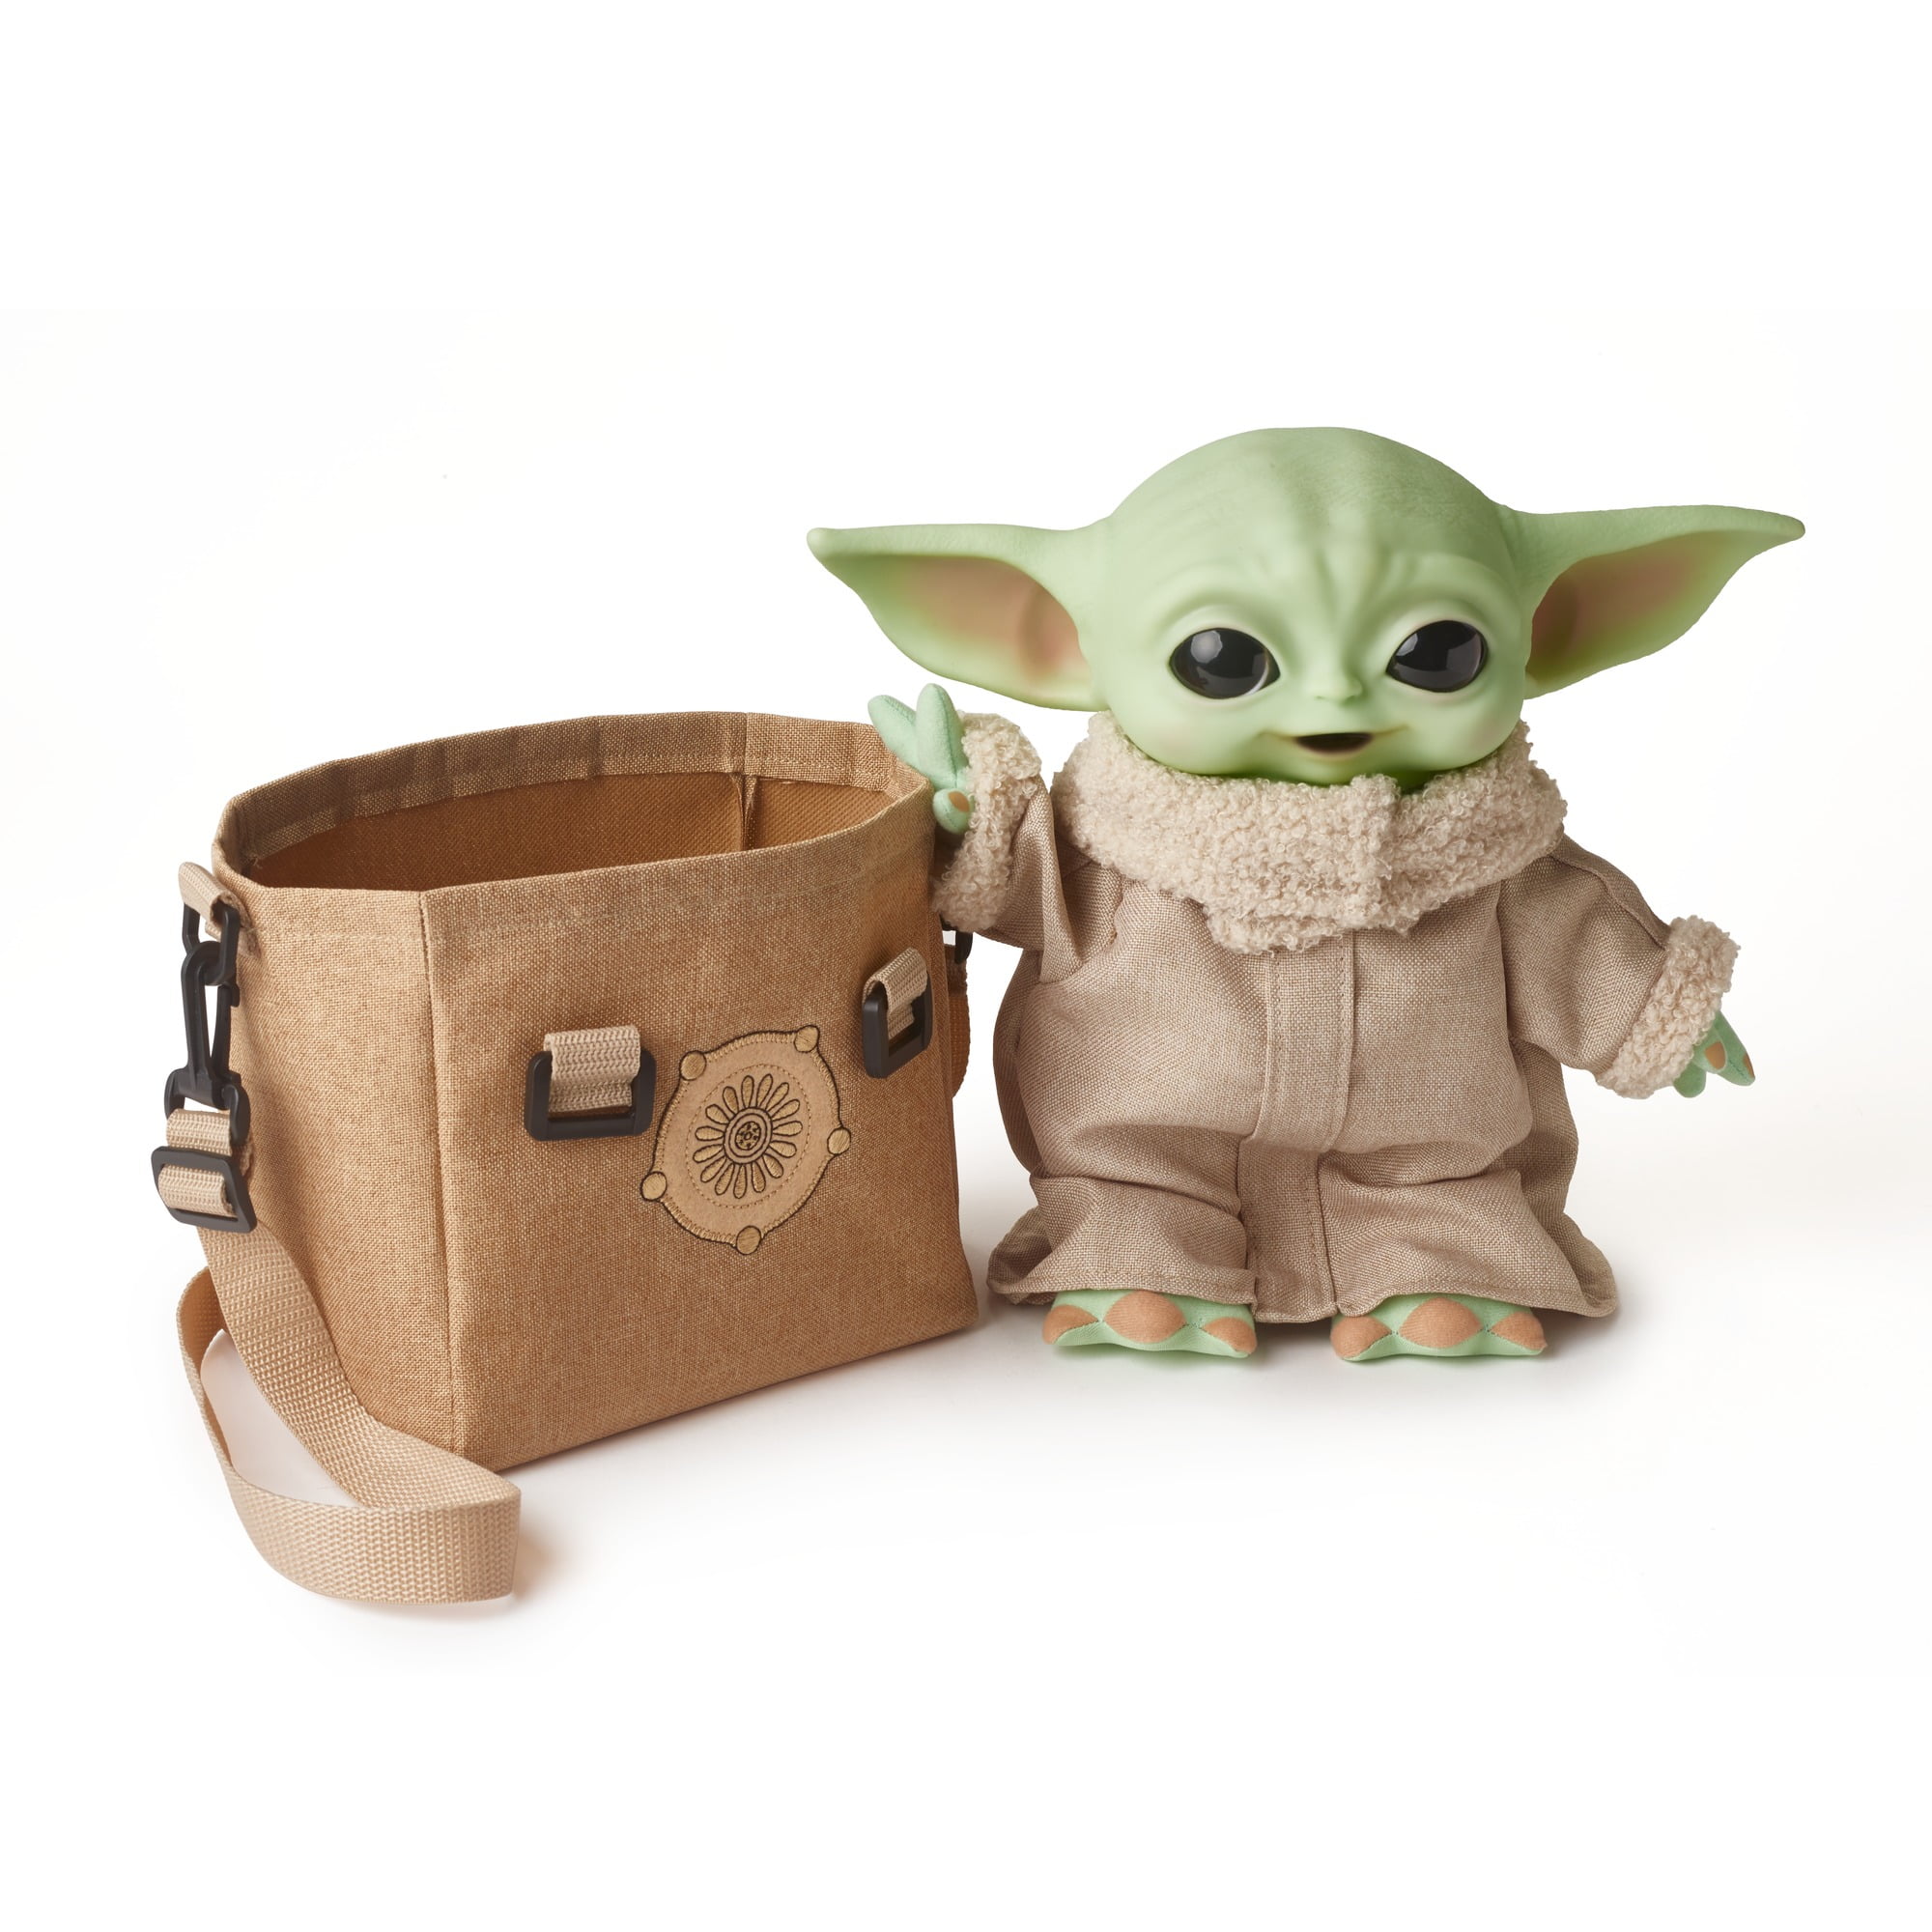 24” Star Wars Mandalorian Plush Baby Yoda Immediate Ship!!! 